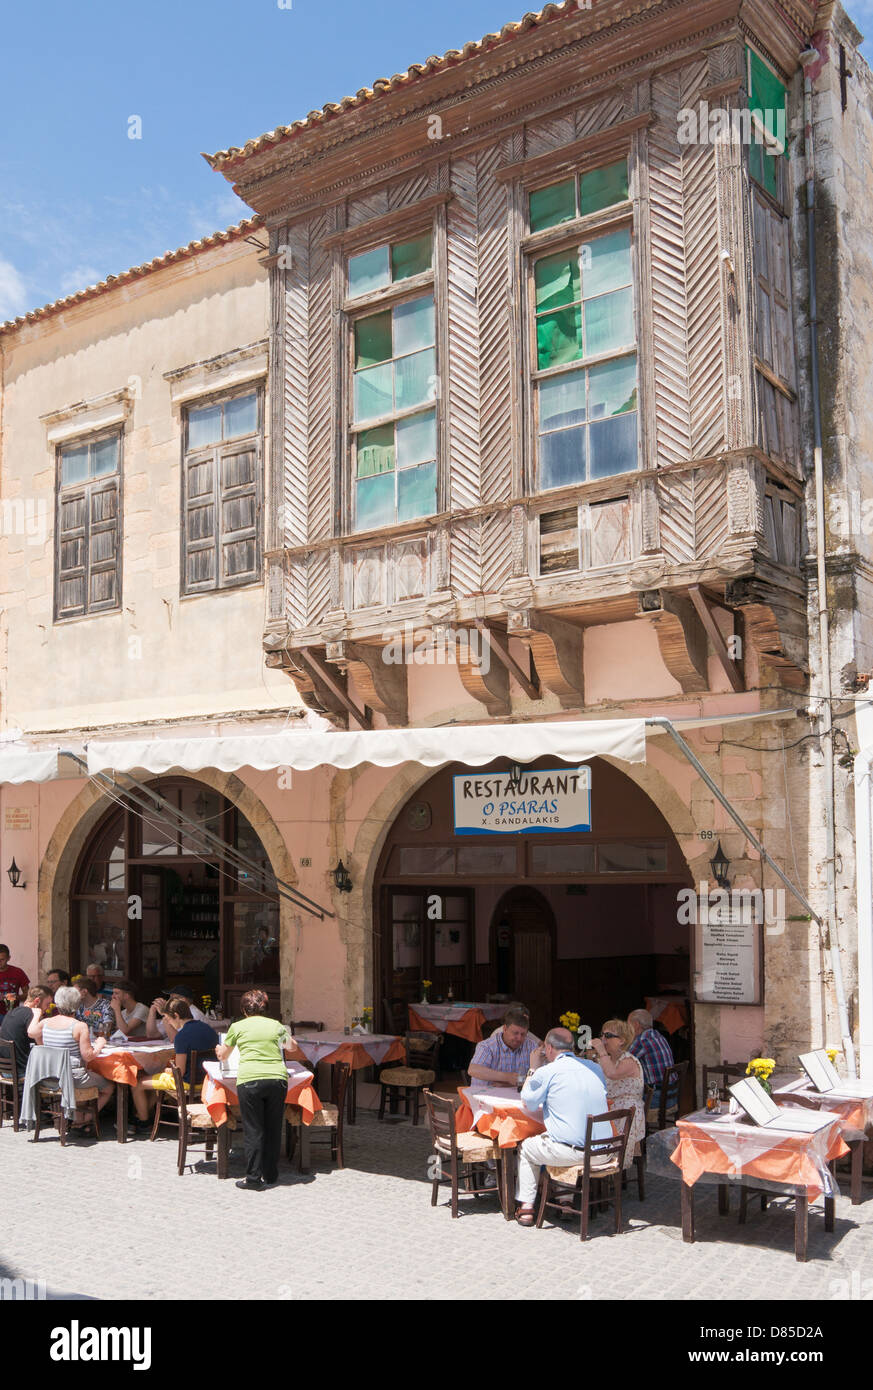 Persone di mangiare al ristorante Opsaras entro la città vecchia di Rethymno, Creta Foto Stock